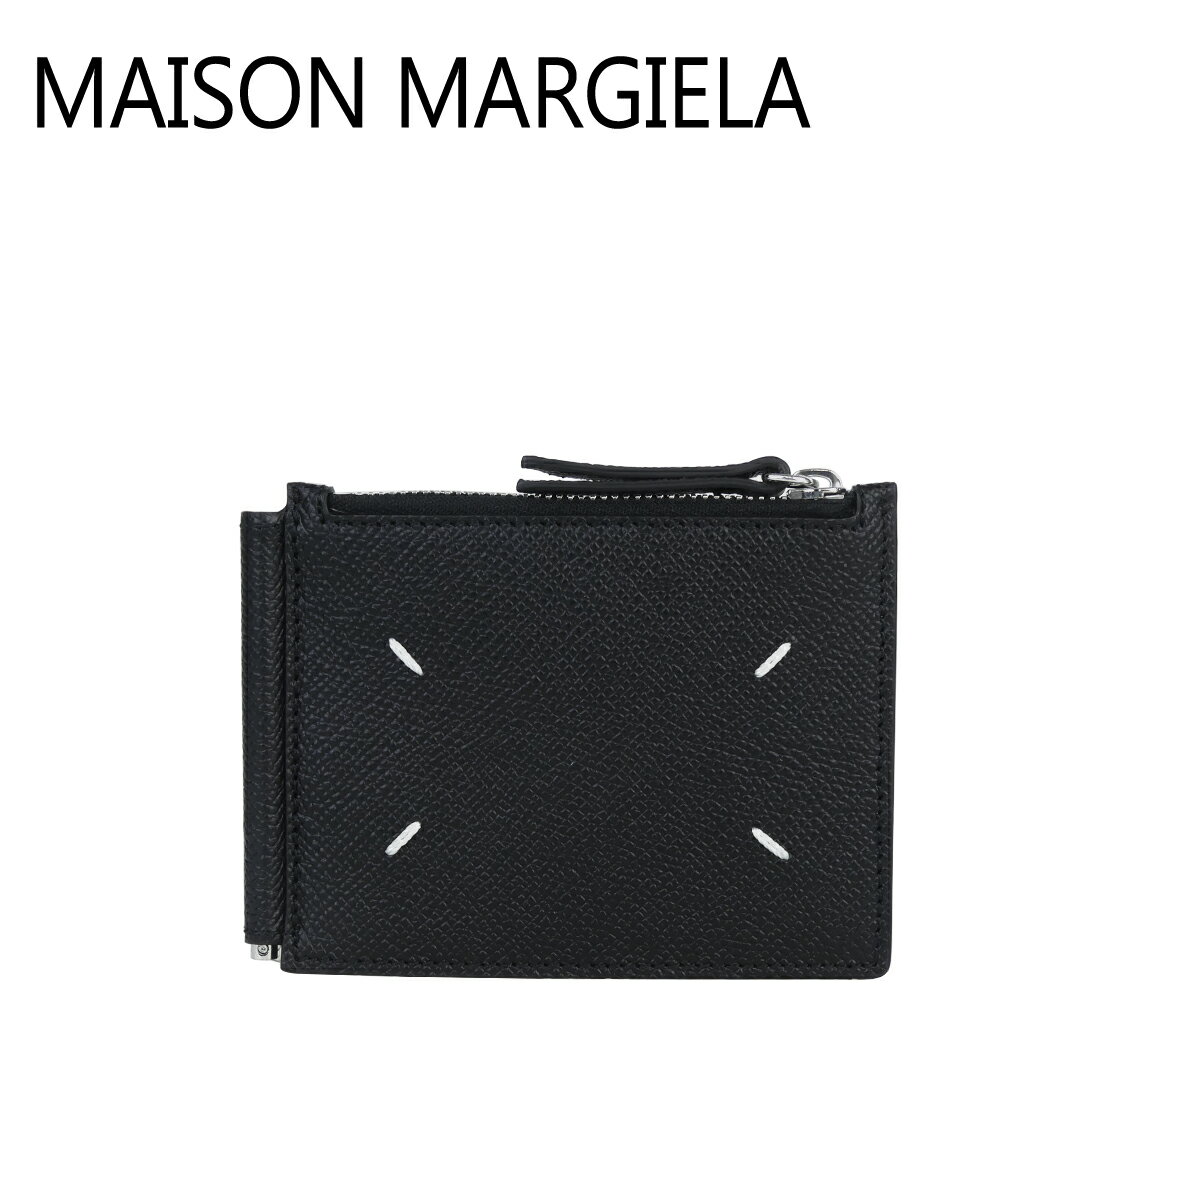 メゾン マルジェラ マネークリップ メゾンマルジェラ Maison Margiela 二つ折り財布 マネークリップ付き 小銭入れ付き SA1UI0018 P4745 T8013 BLACK ギフト・のし可